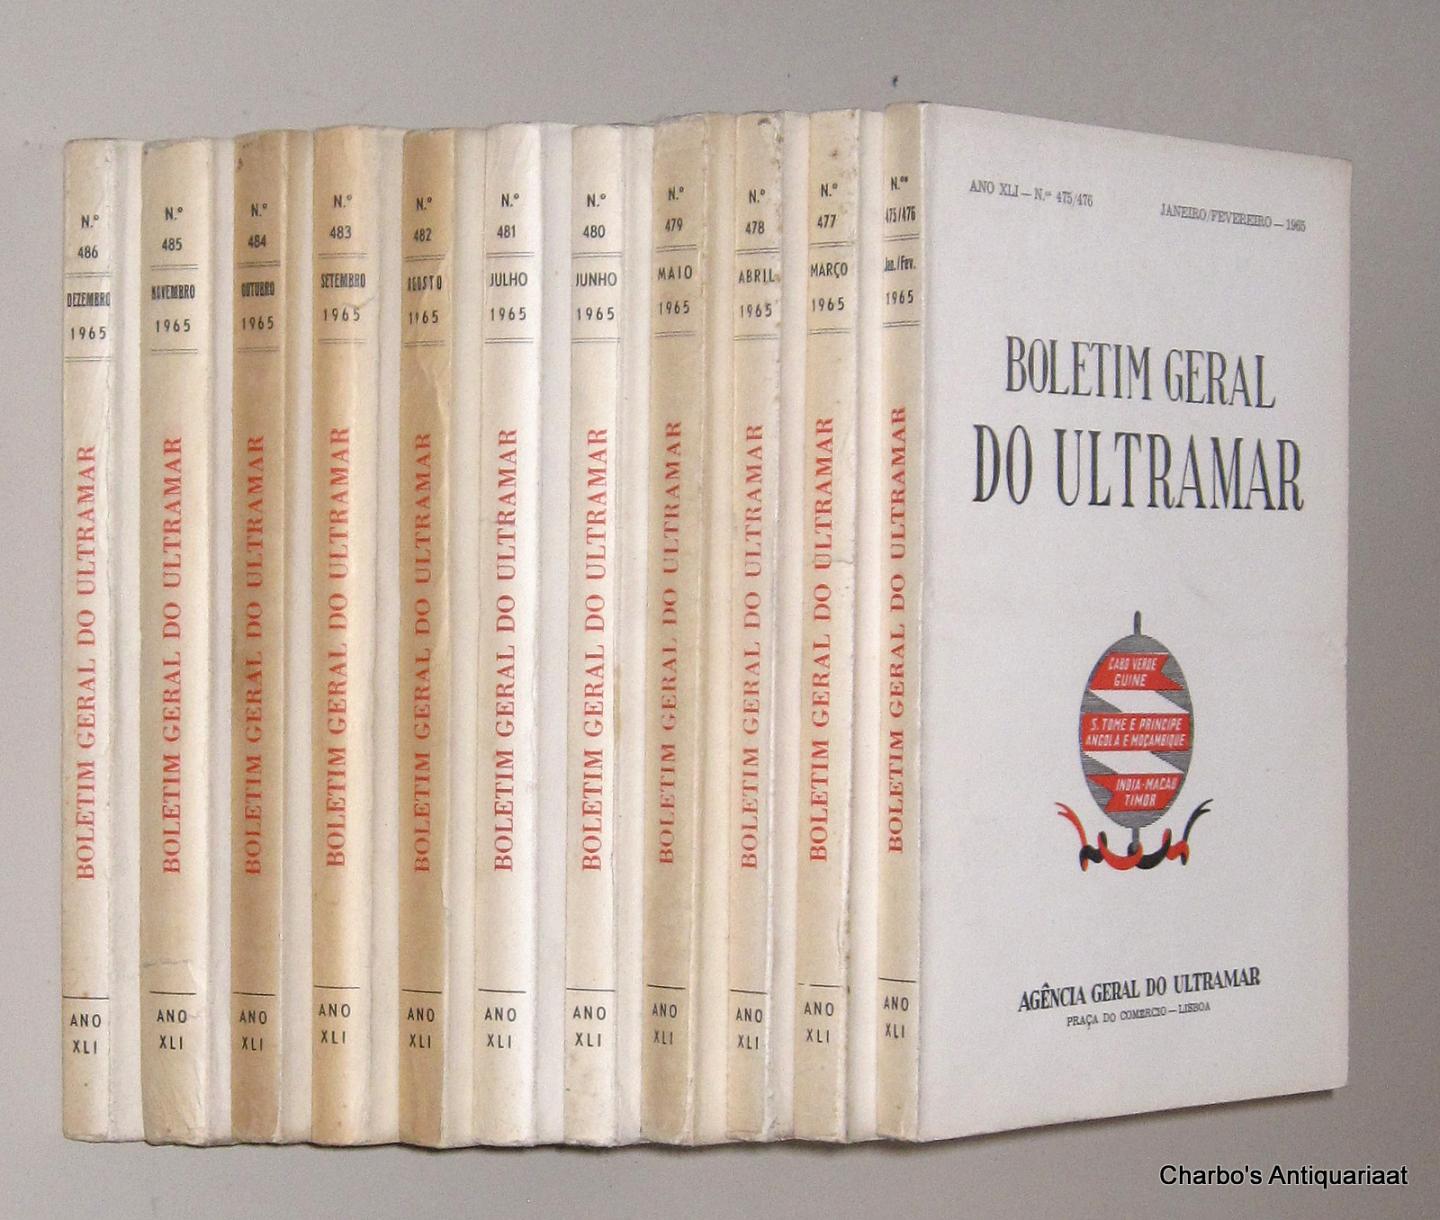 AGENCIA GERAL DO ULTRAMAR, - Boletim Geral do Ultramar, ano XLI No. 475, Janeiro - No. 486, Dezembro 1965.